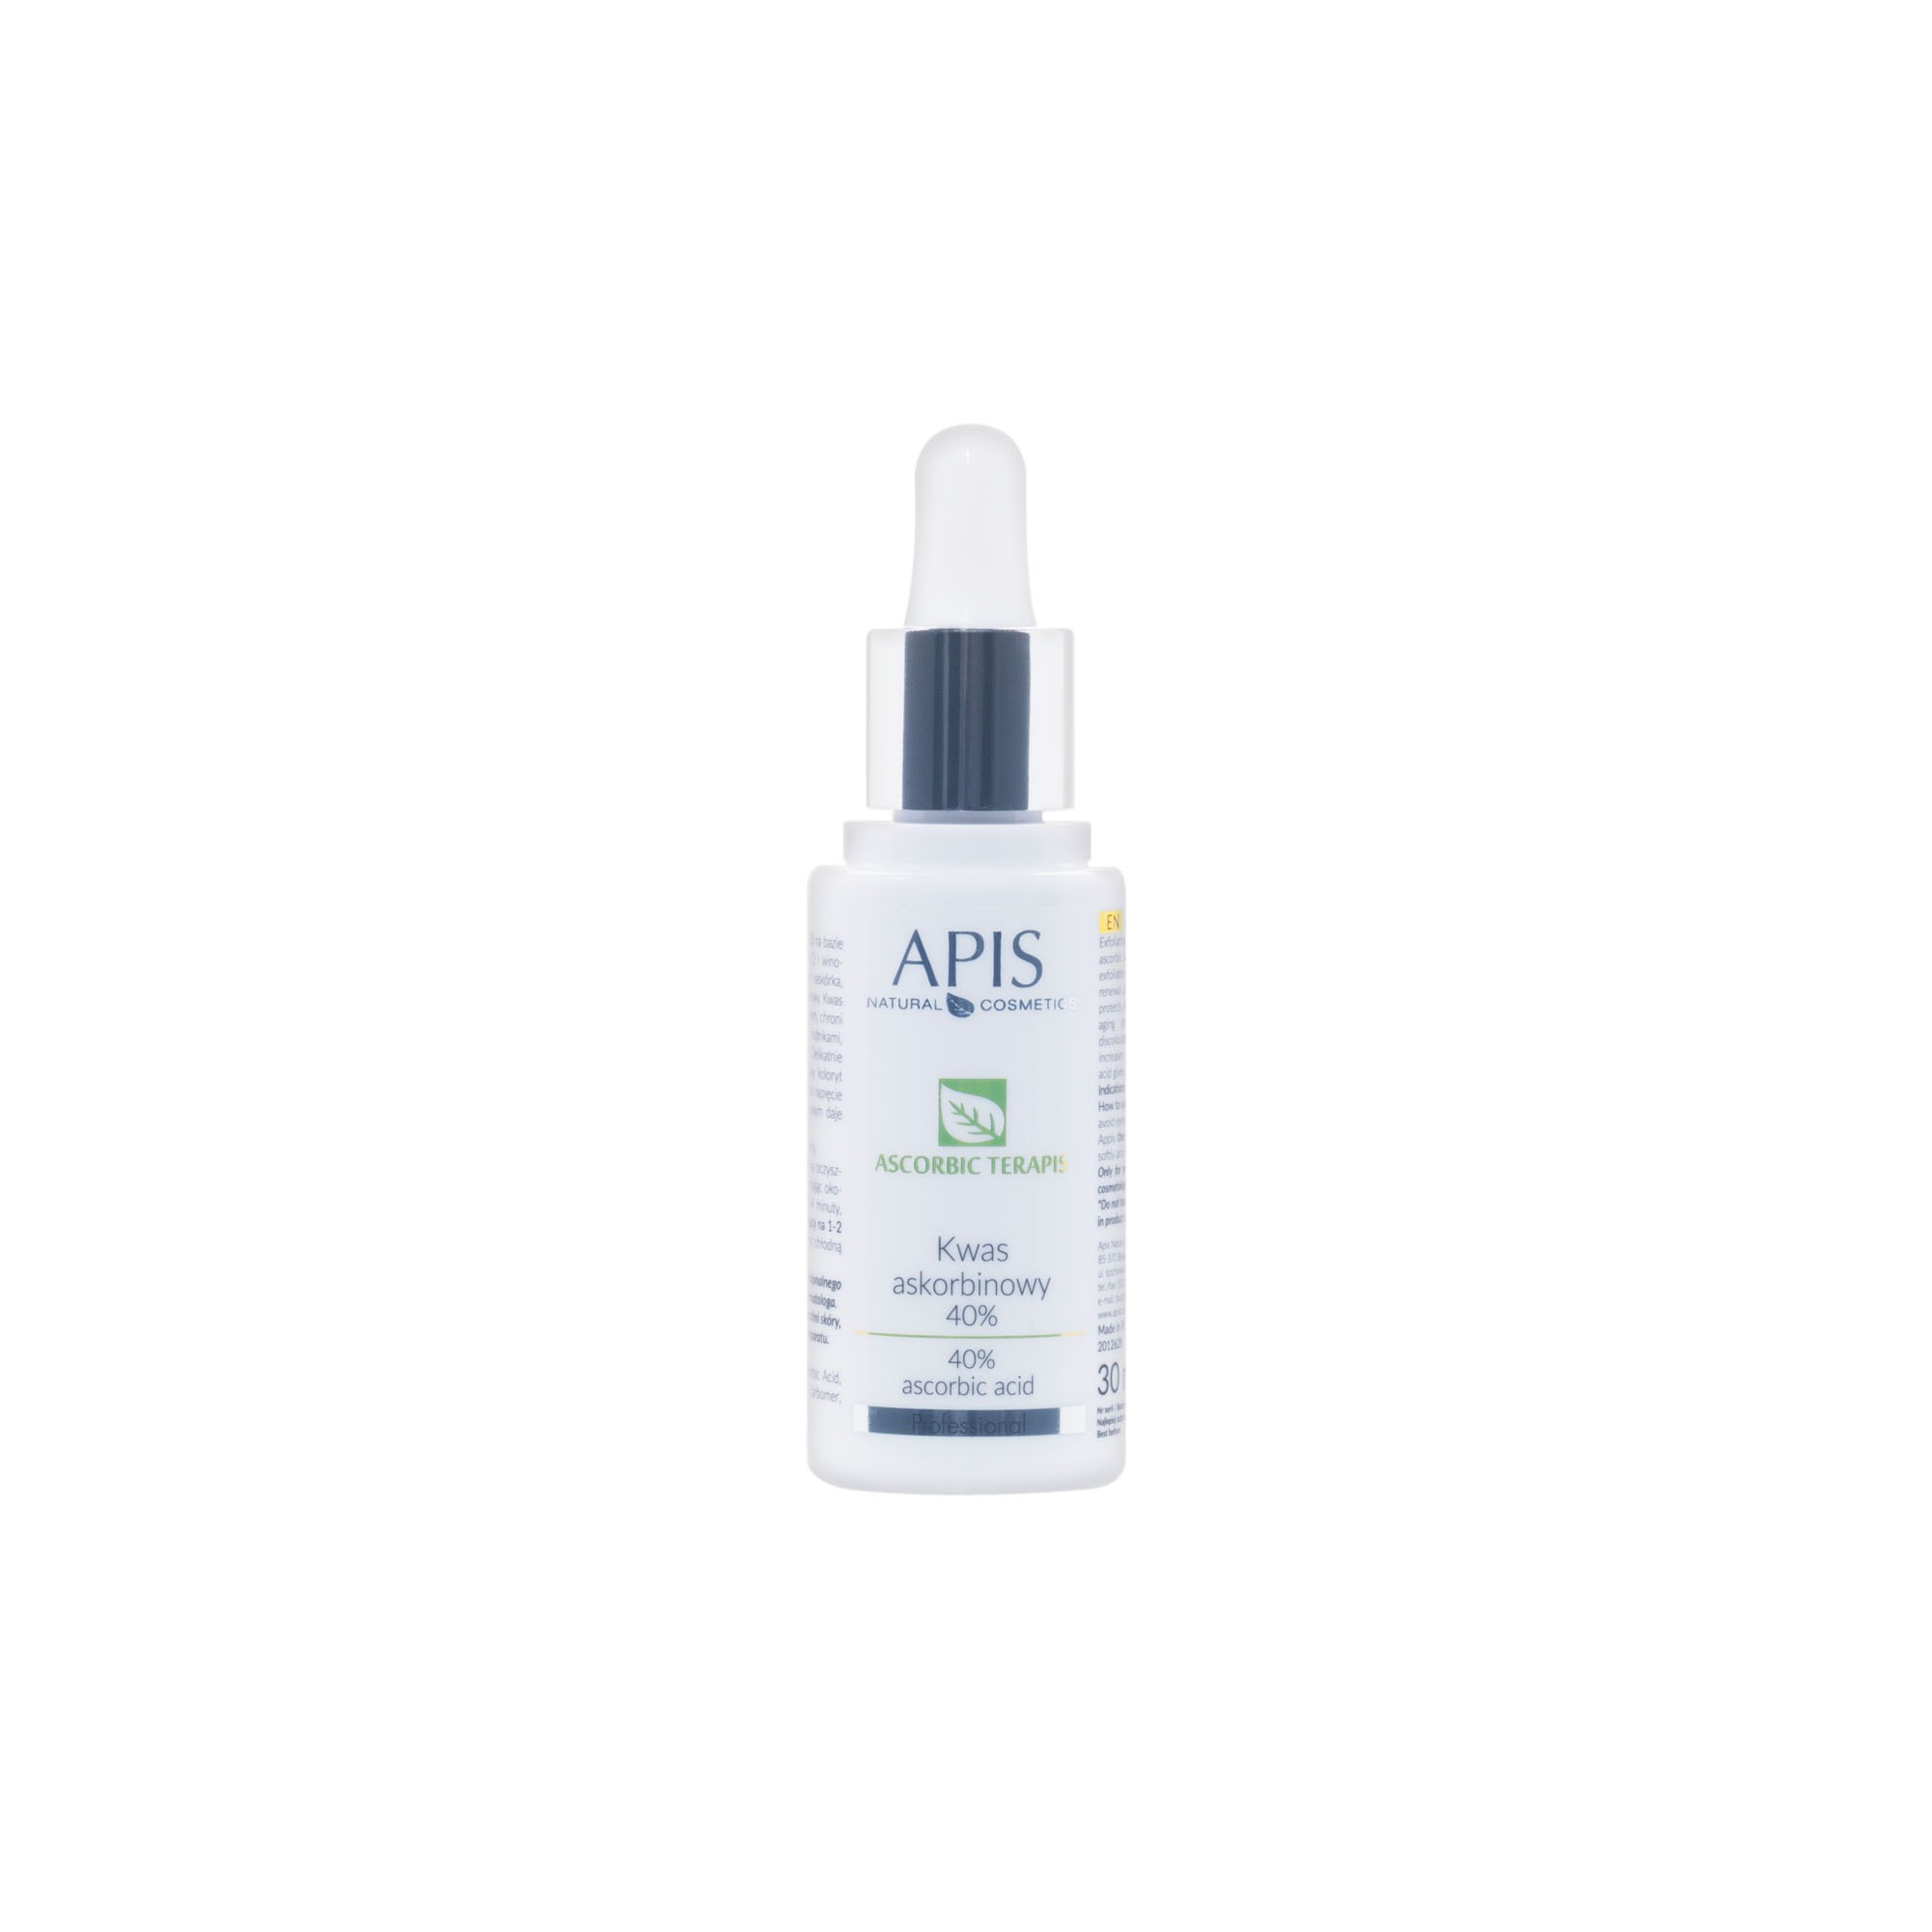 APIS – Kwas askorbinowy 40% 30ml (52675)